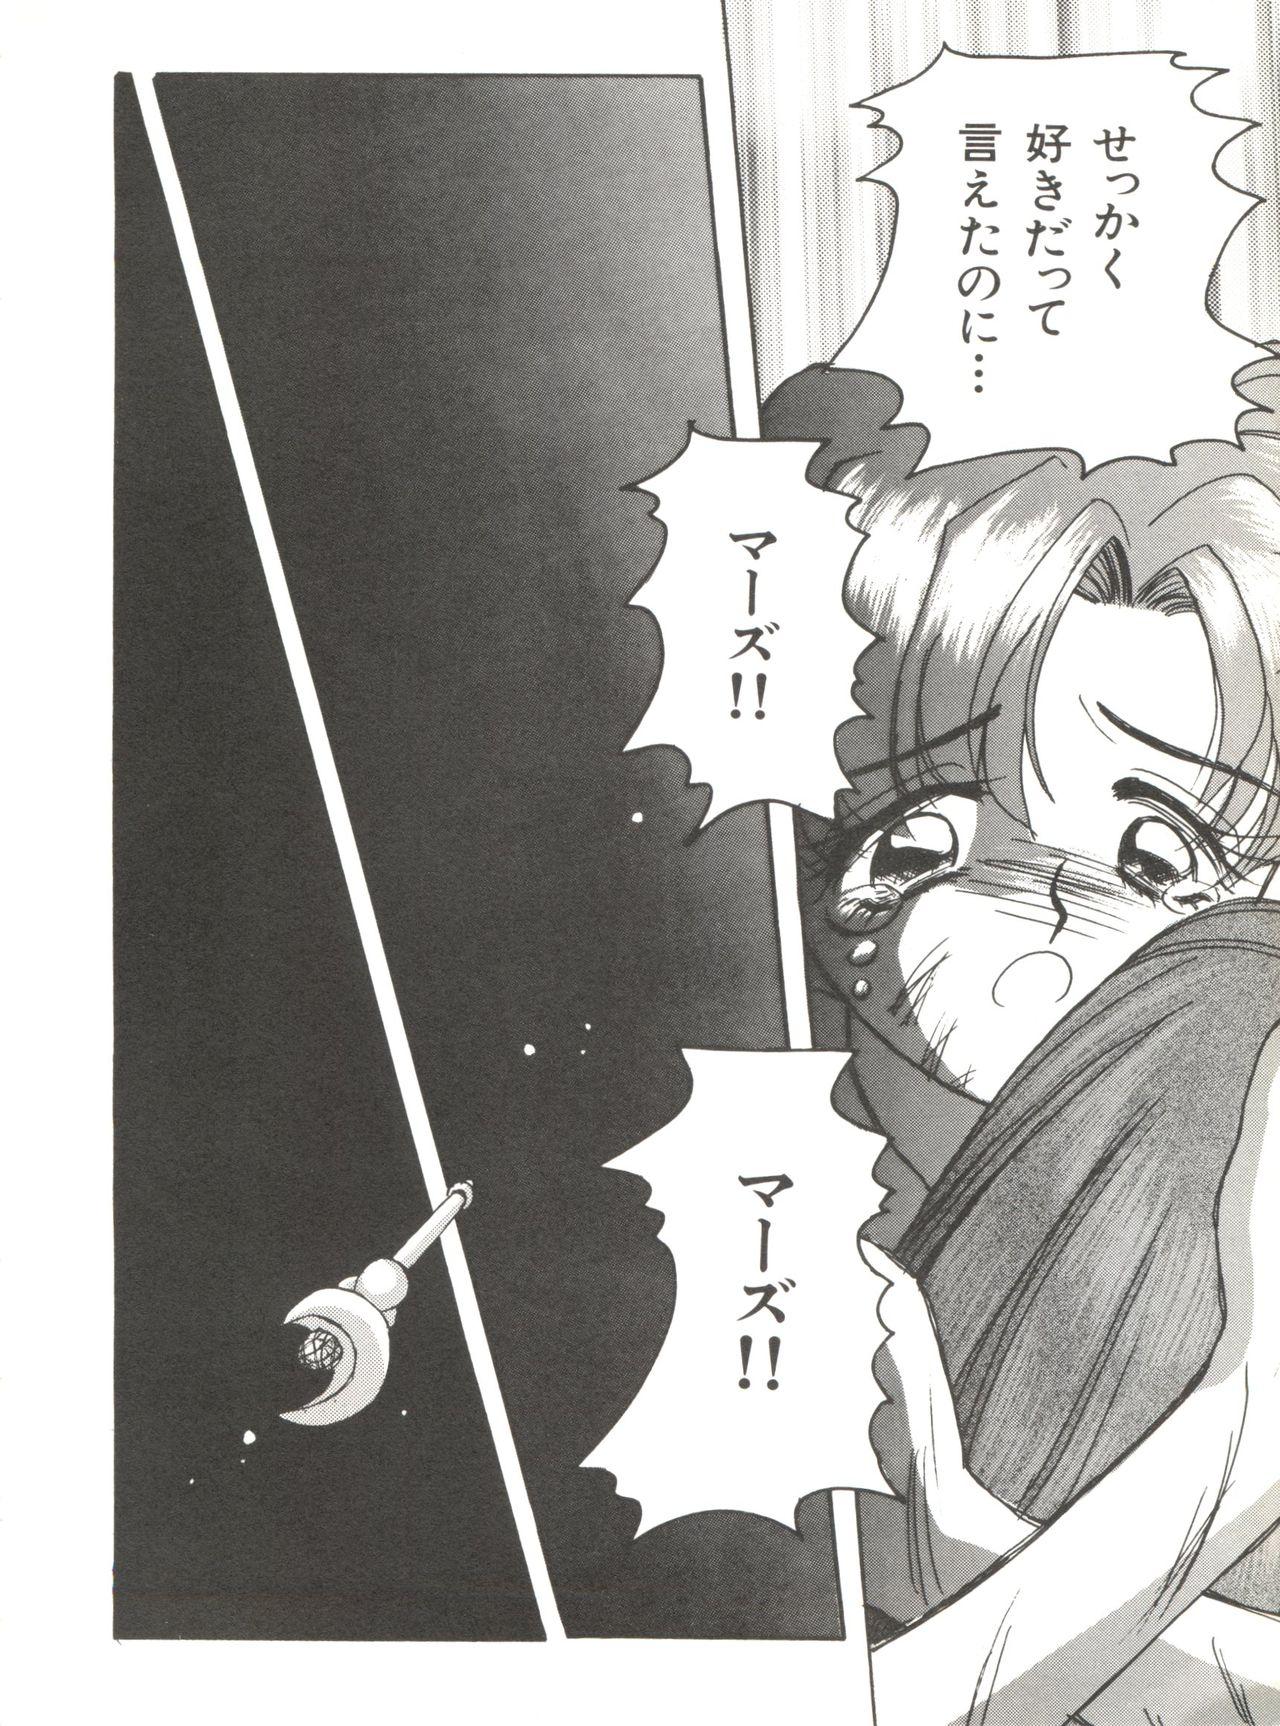 Bishoujo Doujinshi Anthology 12 - Moon Paradise 7 Tsuki no Rakuen 86